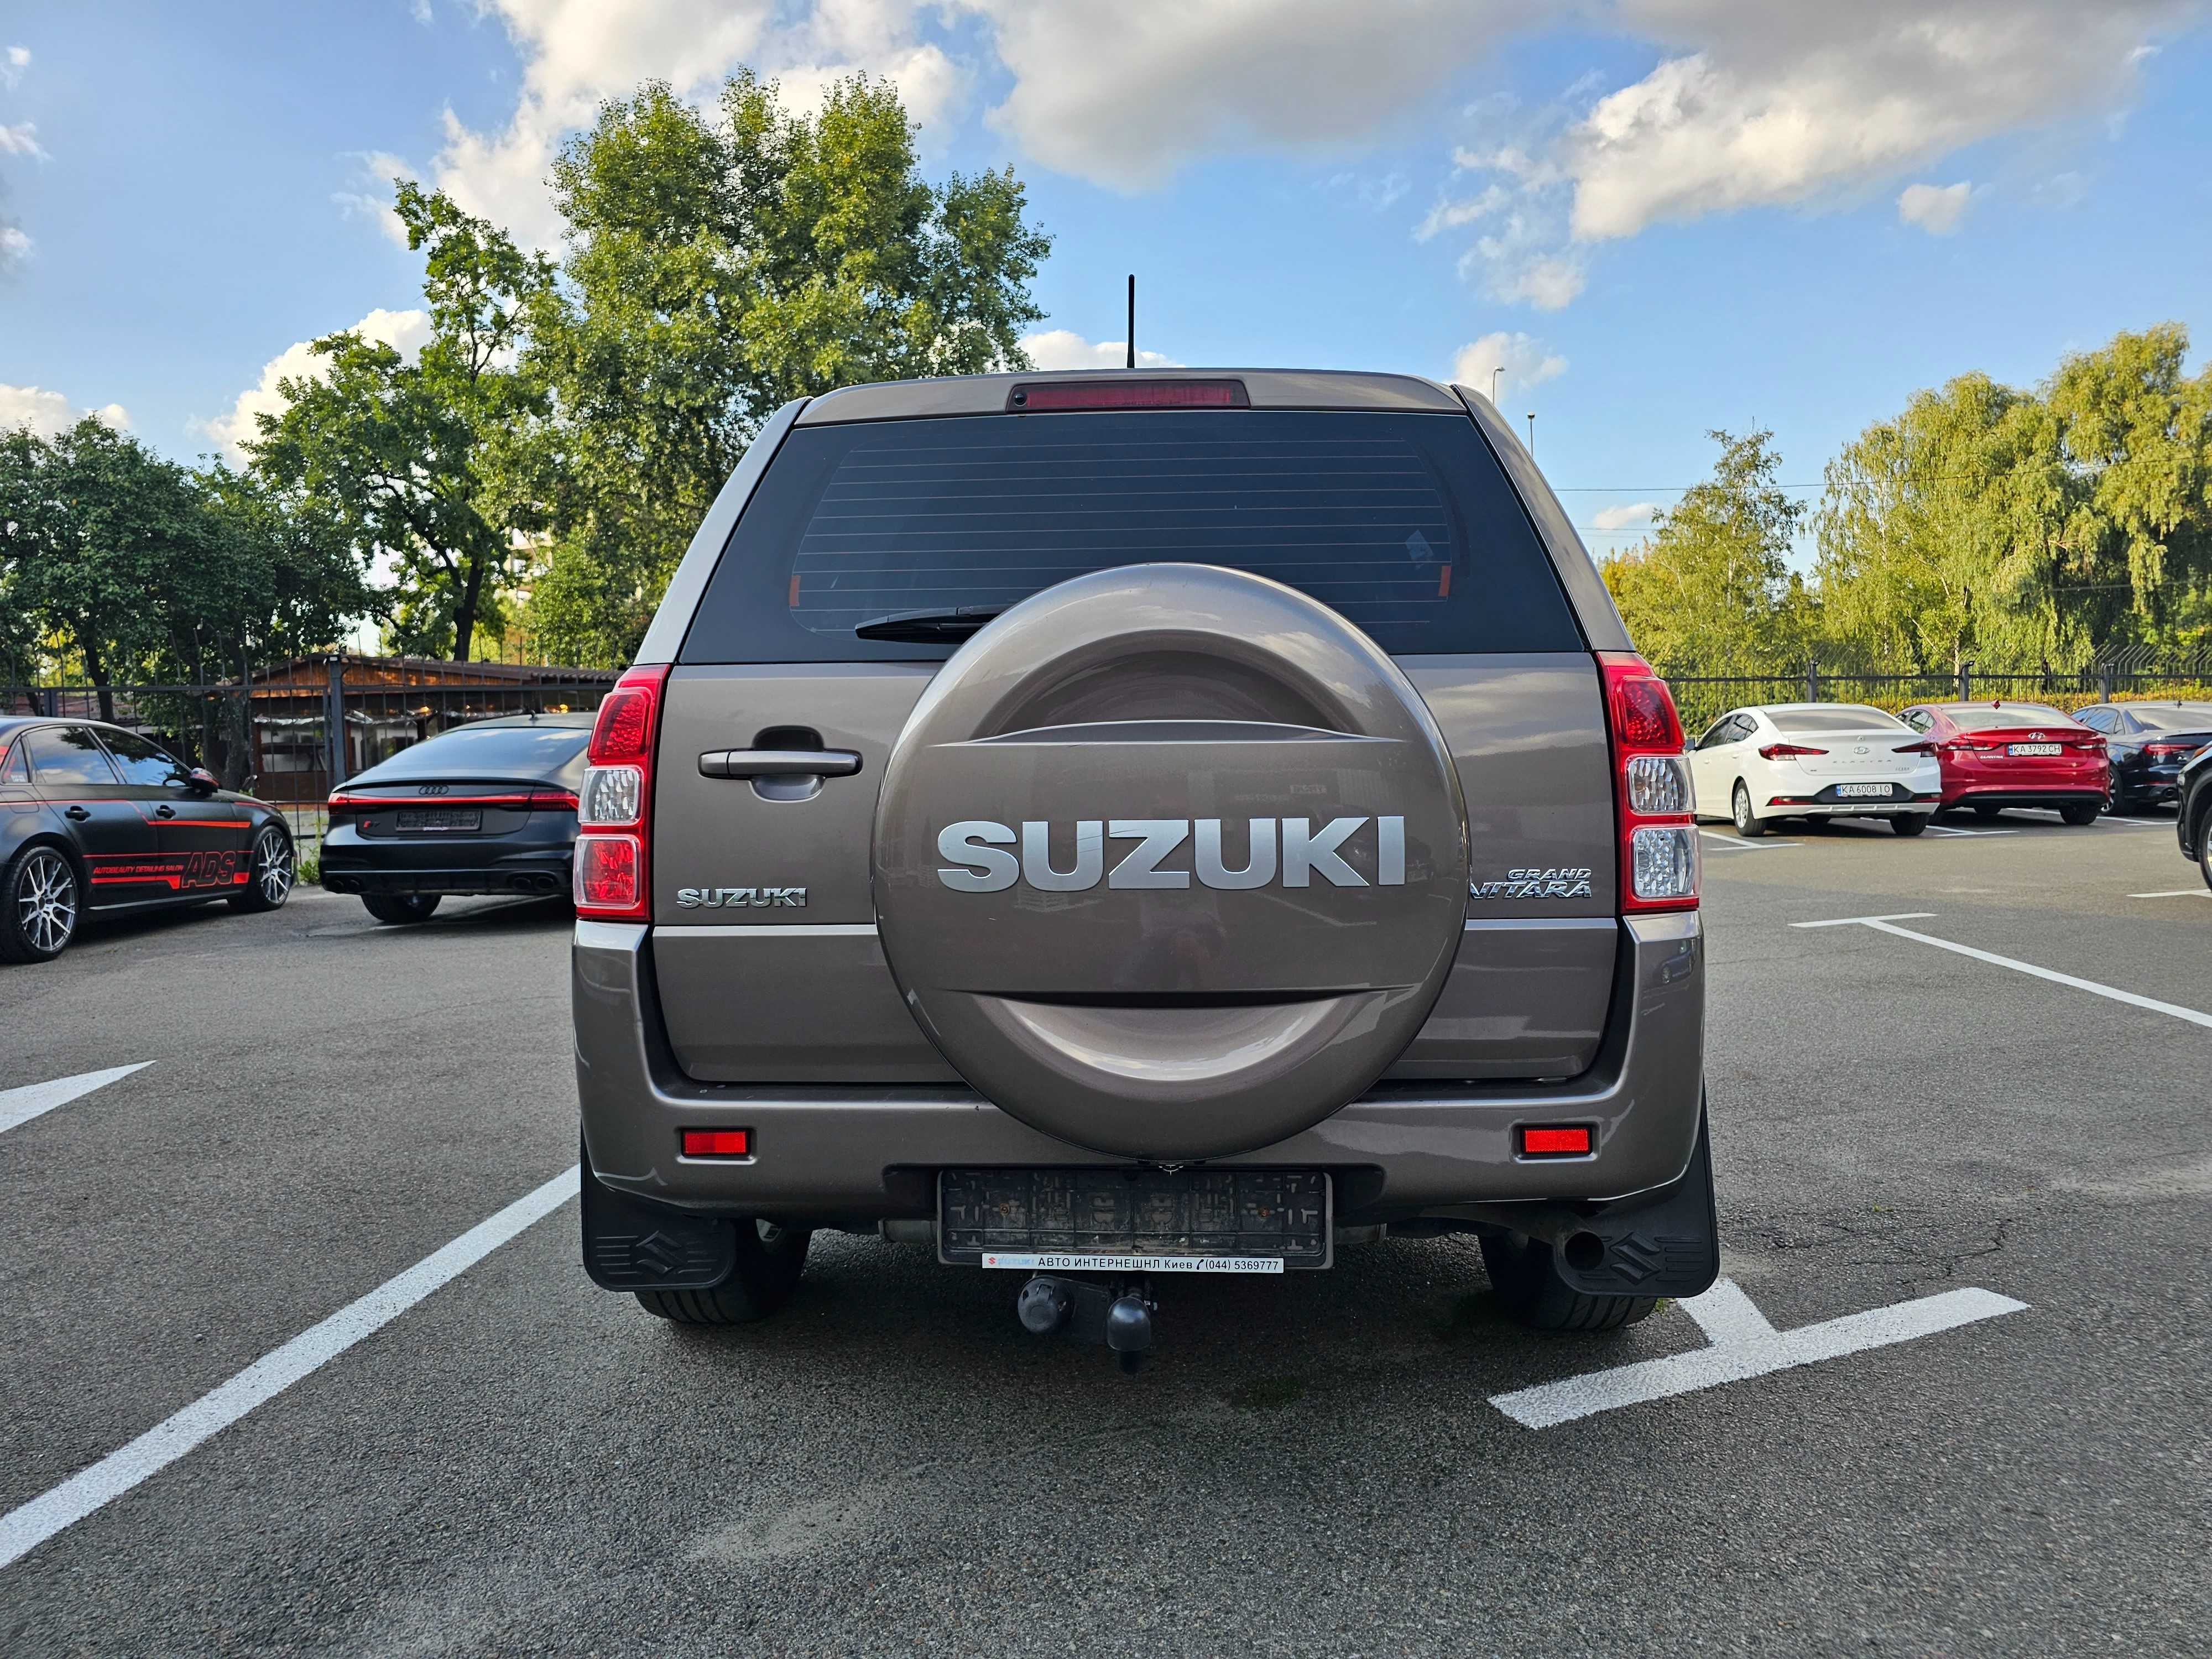 Suzuki Grand Vitara